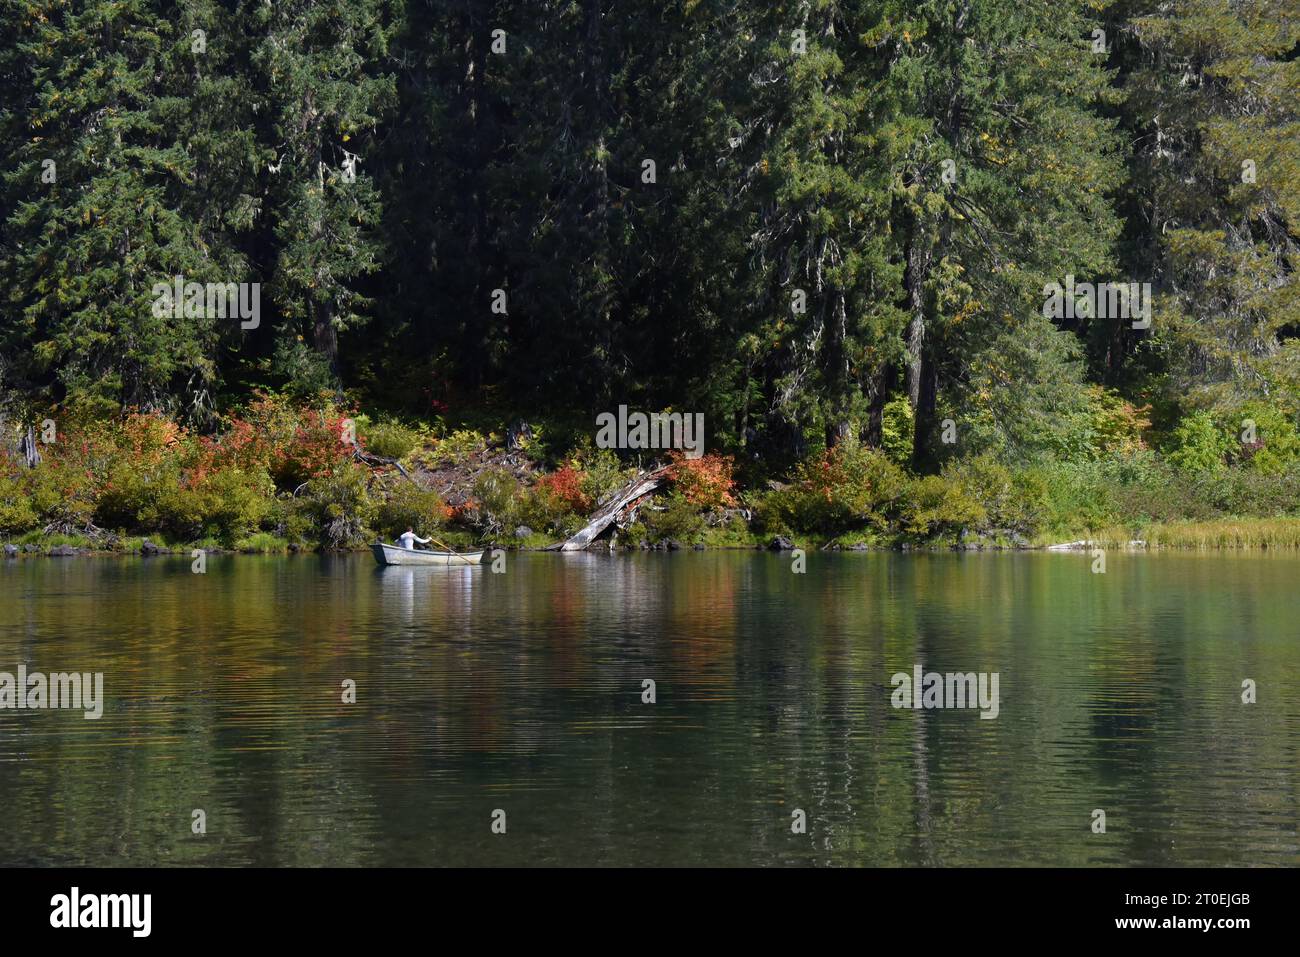 Man rema un pequeño bote a lo largo de la orilla del lago Clear en Oregon. El otoño ha coloreado arbustos bajos a lo largo de las orillas del lago. Foto de stock